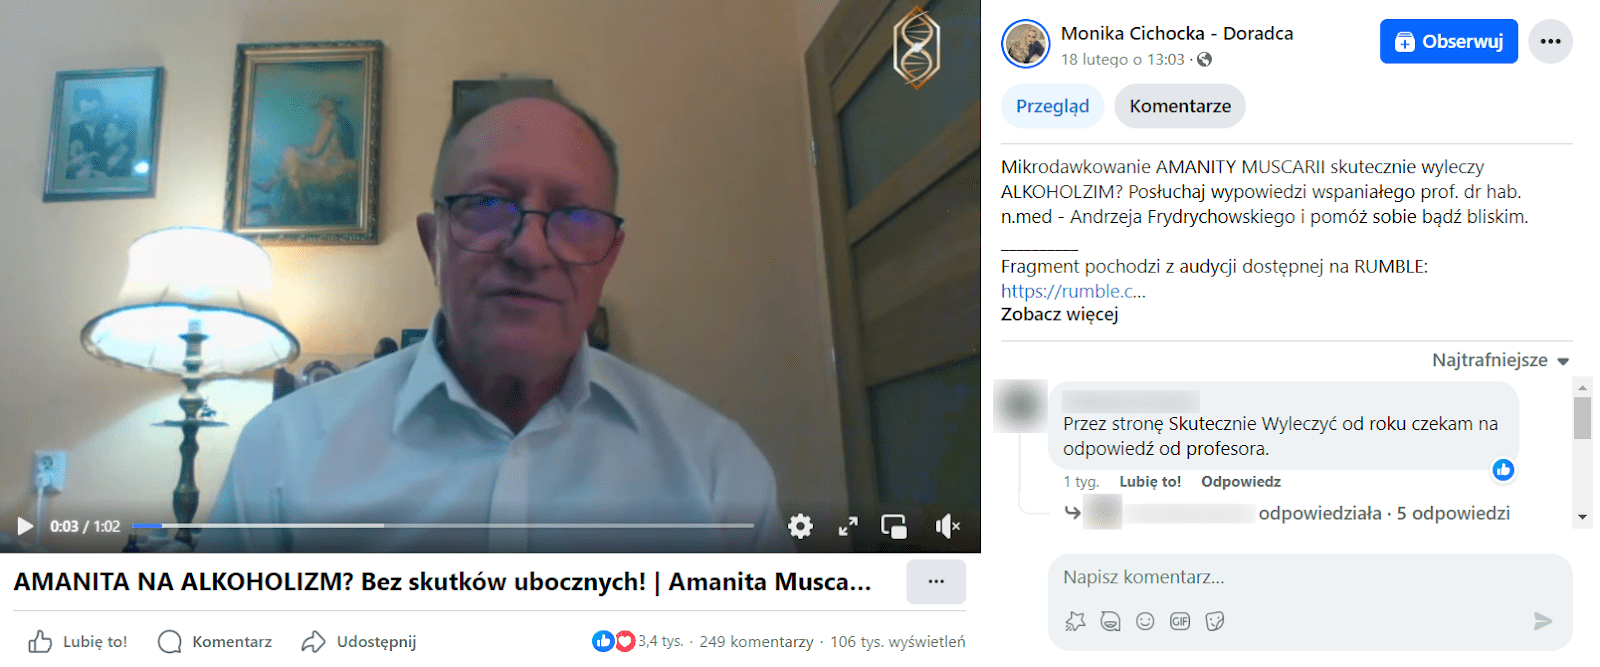 Zrzut ekranu z wpisu z materiałem wideo na Facebooku. Na stopklatce z filmu widać Andrzeja Frydrychowskiego, który znajduje się w pokoju z obrazami na ścianie oraz ze słabym oświetleniem z lampki z abażurem.